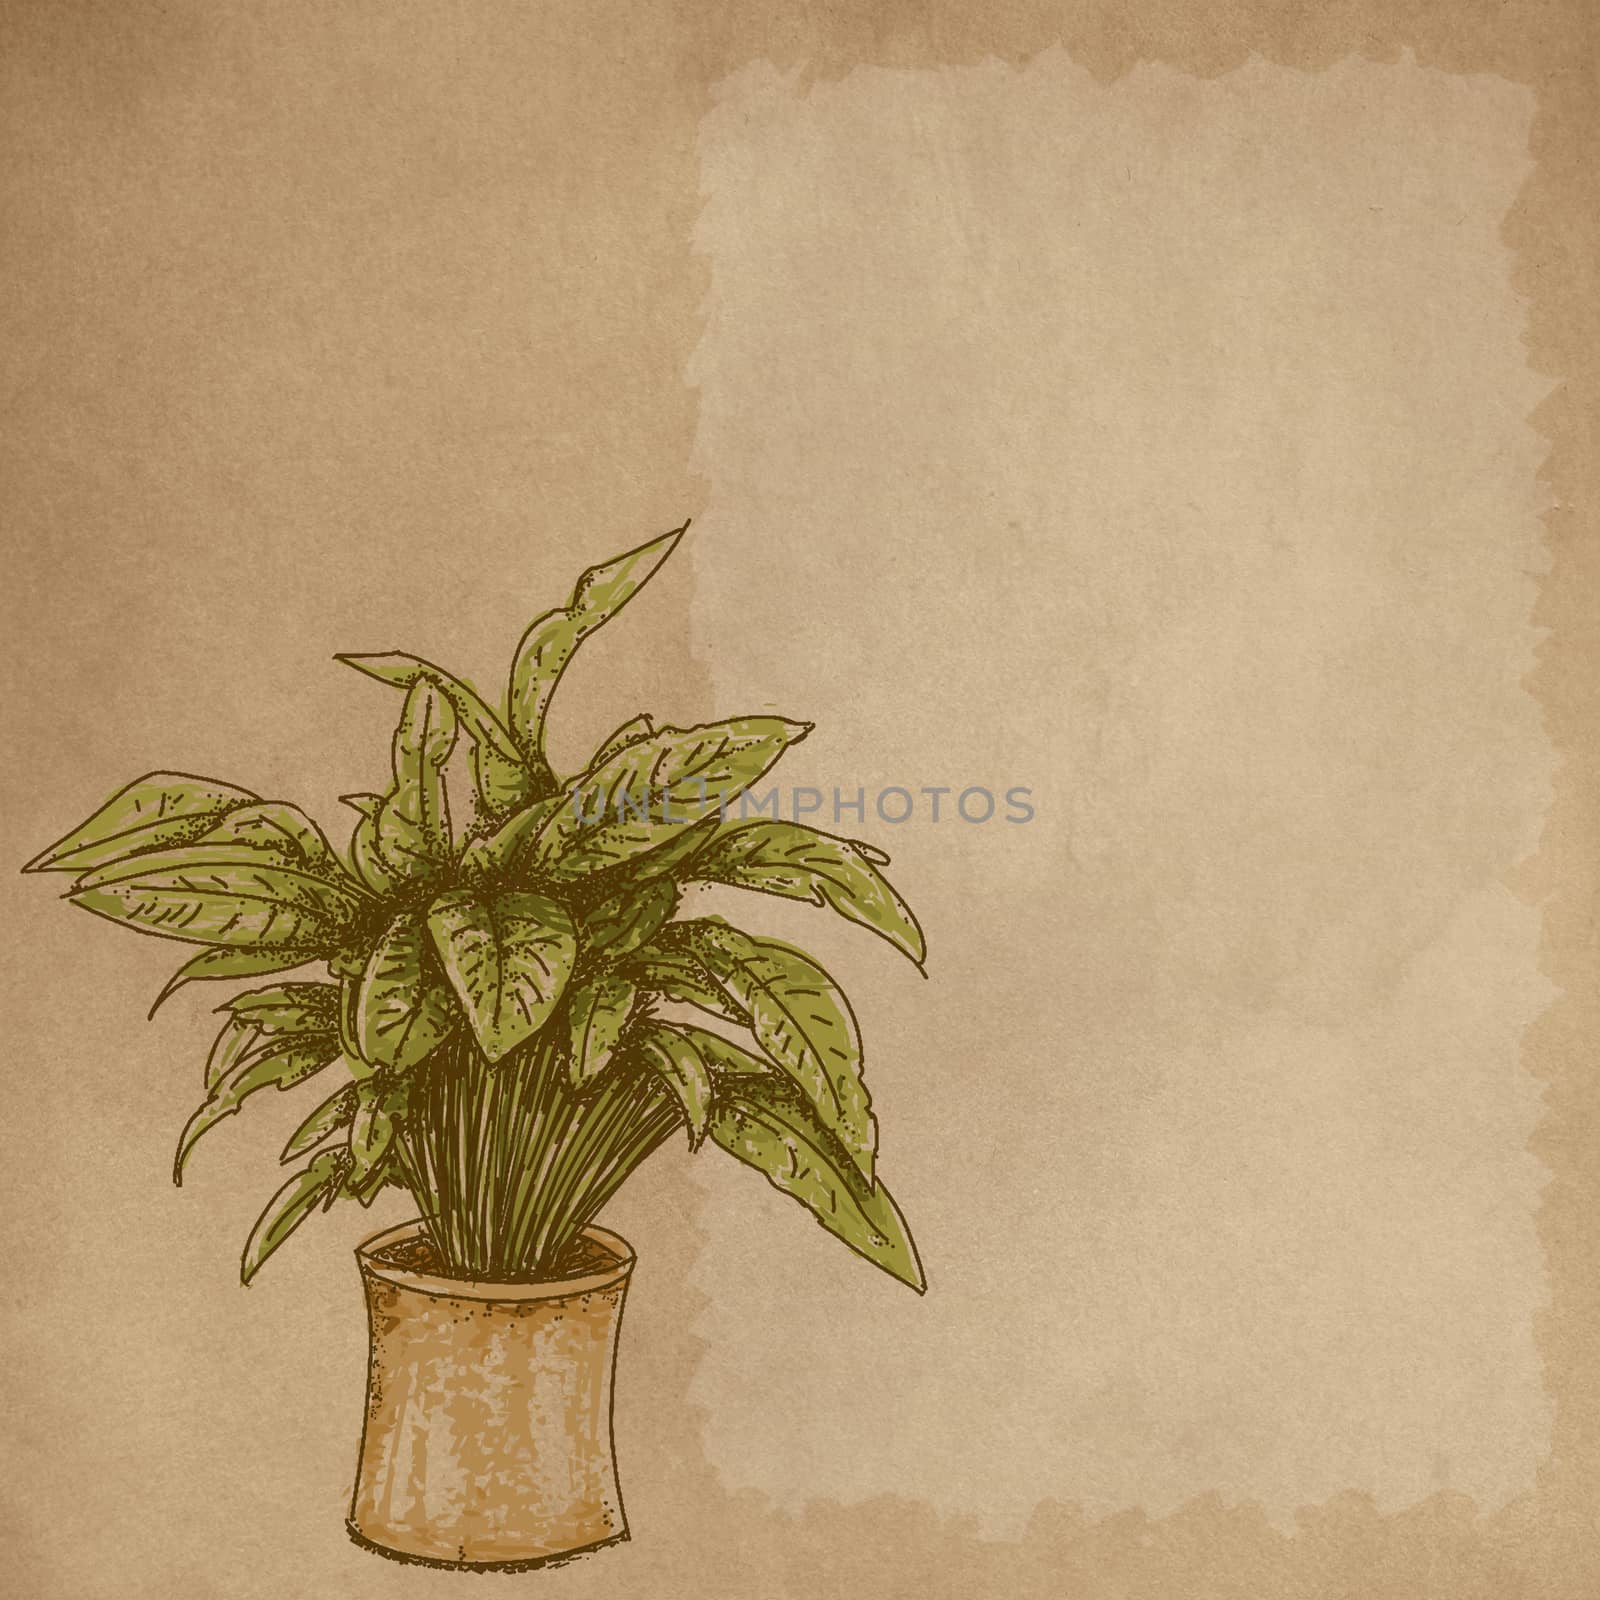 Disegni realistici al tratto di piante Crema e spazio di scrittura Disegni realistici al tratto di piante Crema e spazio di scrittura